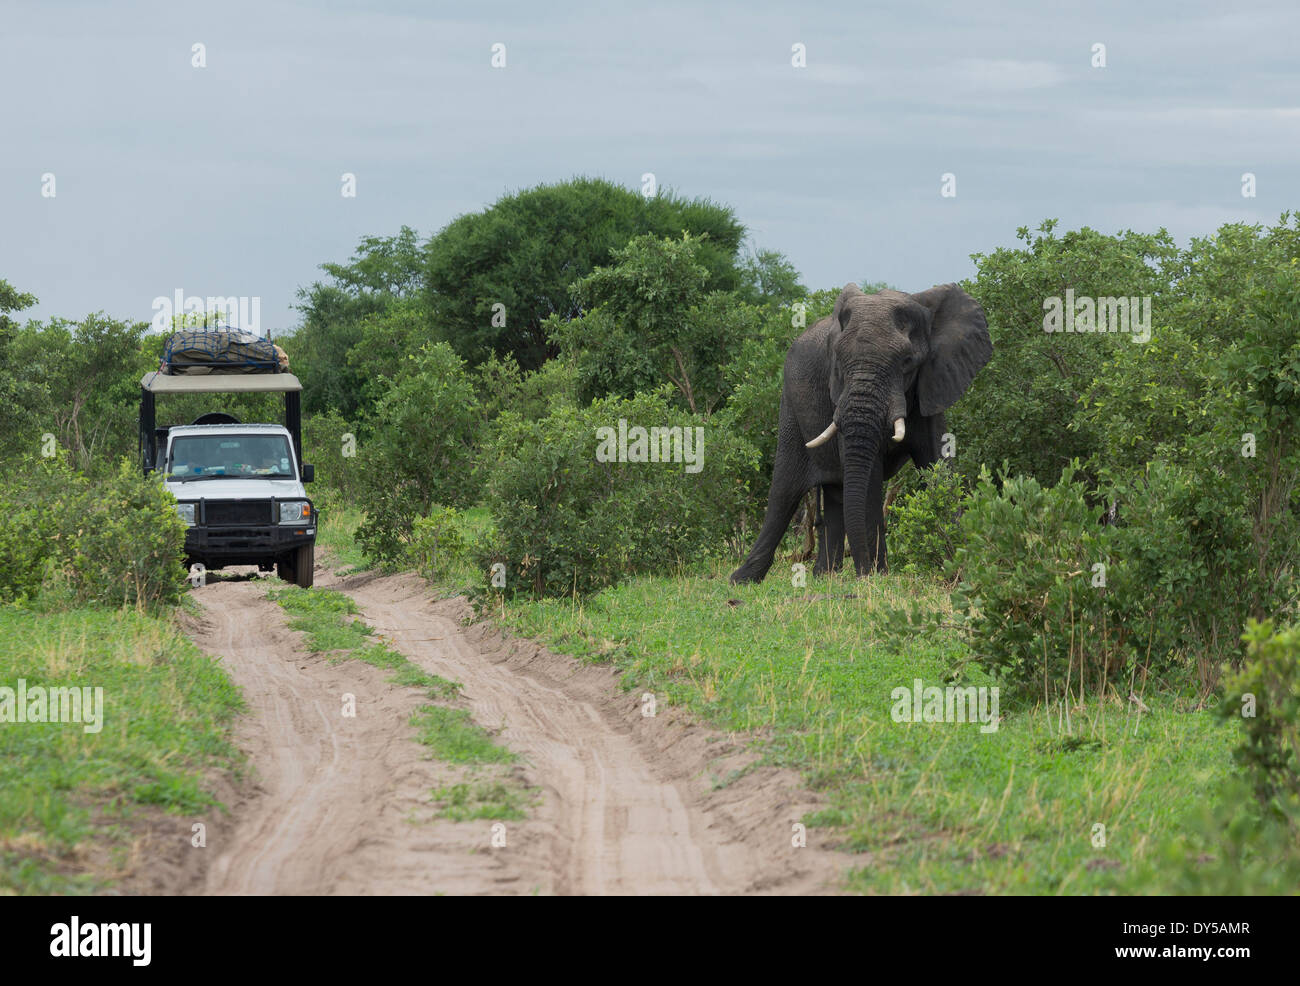 Elefante africano (Loxodonta africana) cerca de safari jeep Foto de stock